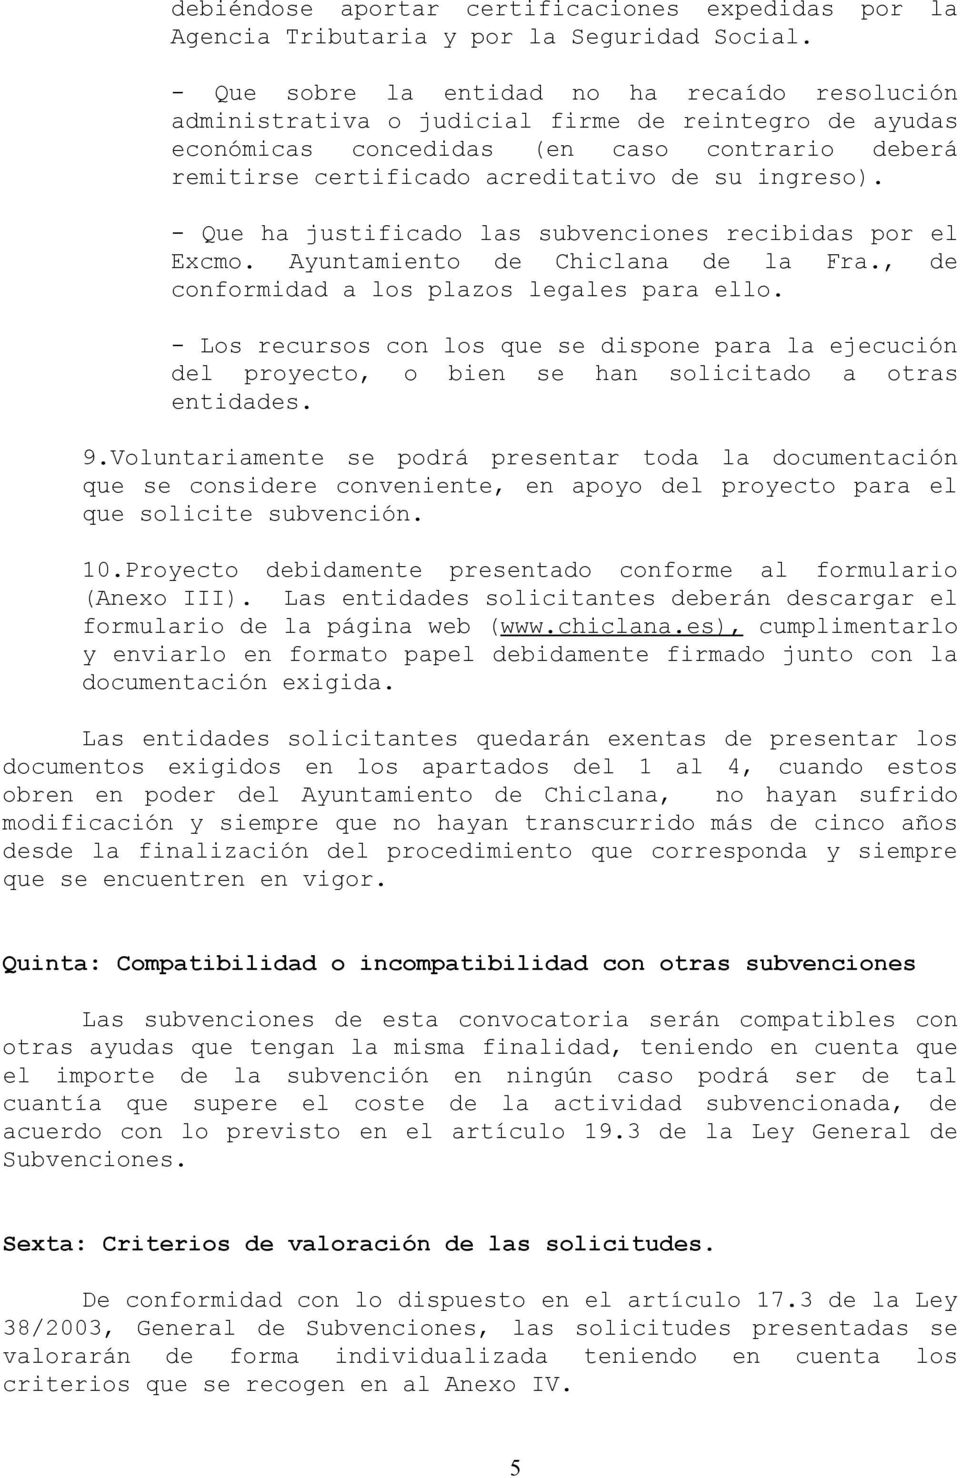 ingreso). - Que ha justificado las subvenciones recibidas por el Excmo. Ayuntamiento de Chiclana de la Fra., de conformidad a los plazos legales para ello.